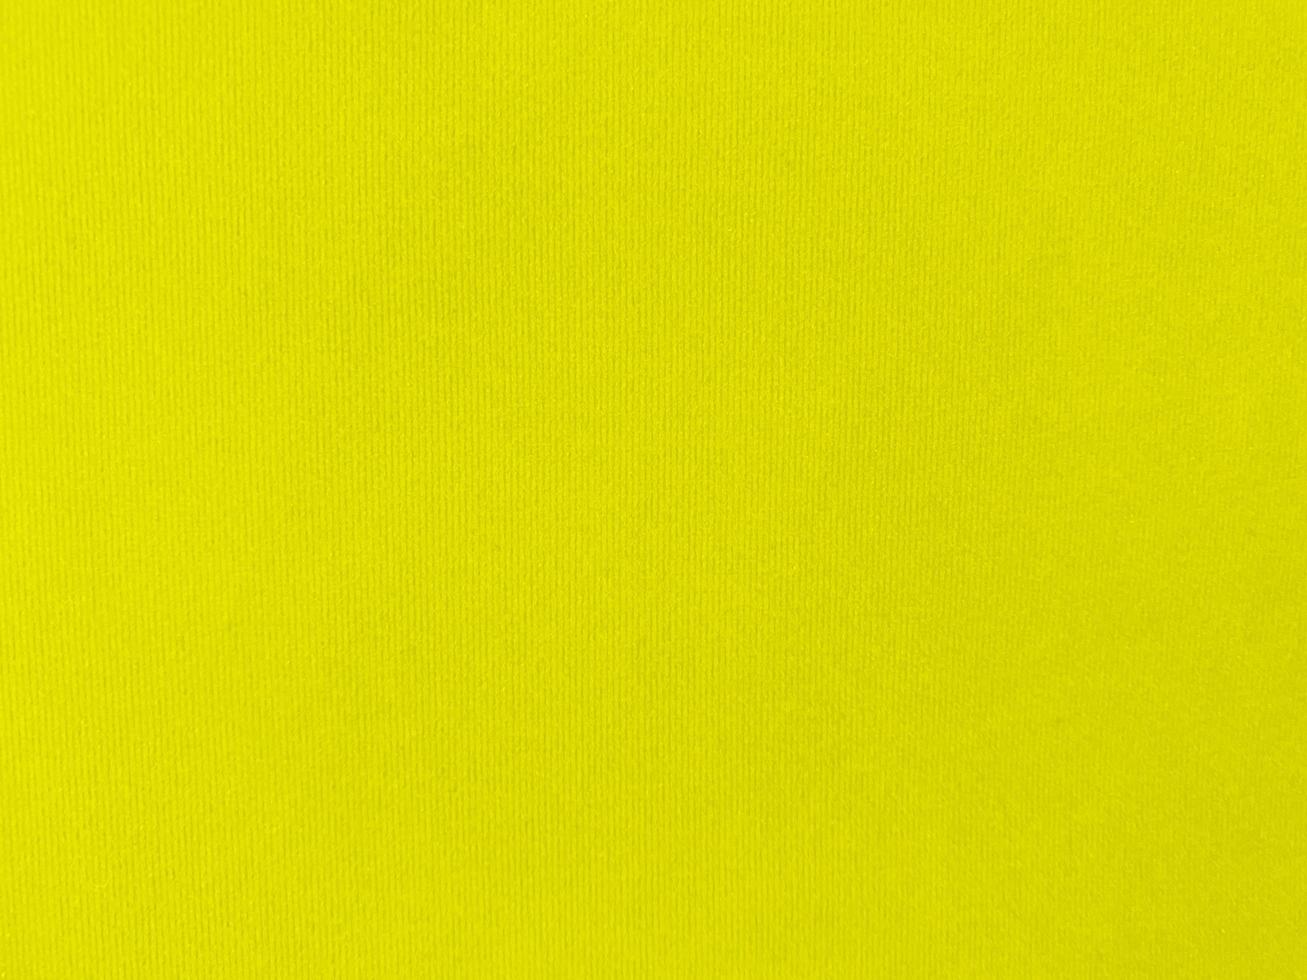 gul sammet tyg textur Begagnade som bakgrund. tömma gul tyg bakgrund av mjuk och slät textil- material. där är Plats för text. foto